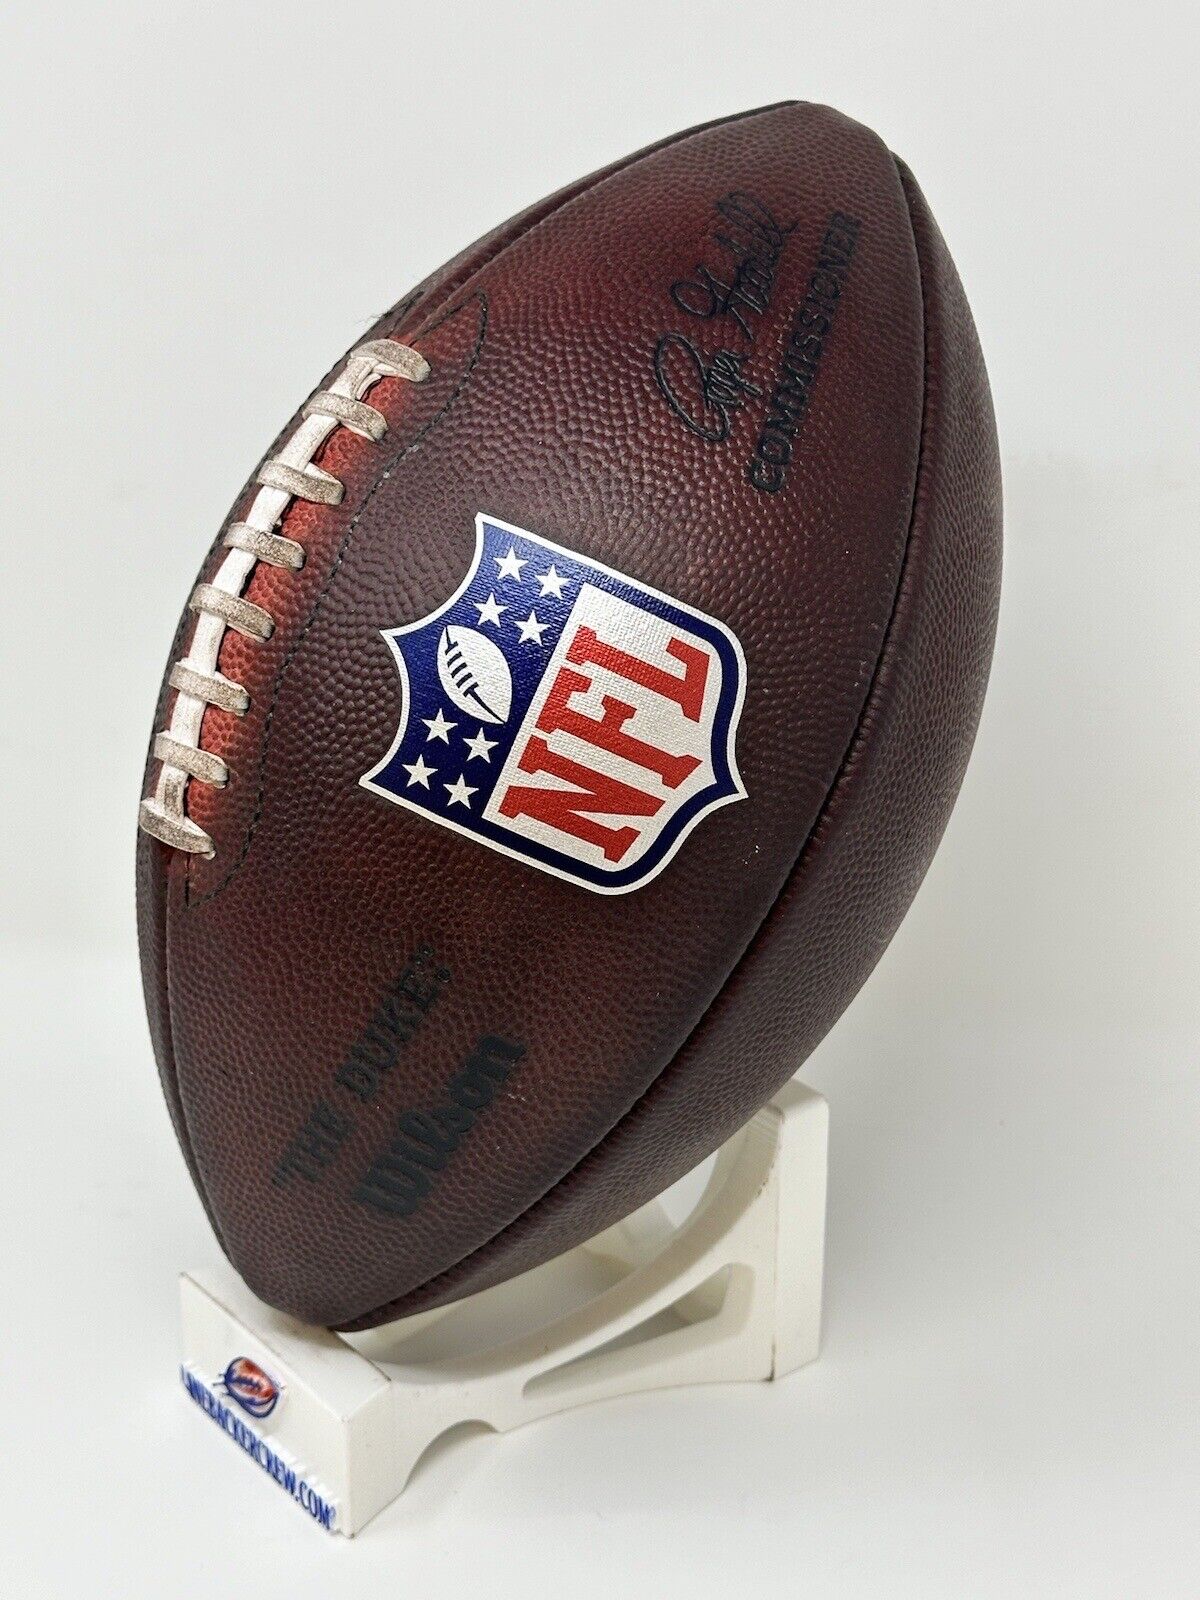 Fully Game LBC Football Prepped – Wilson Duke NFL The LLC Footballs